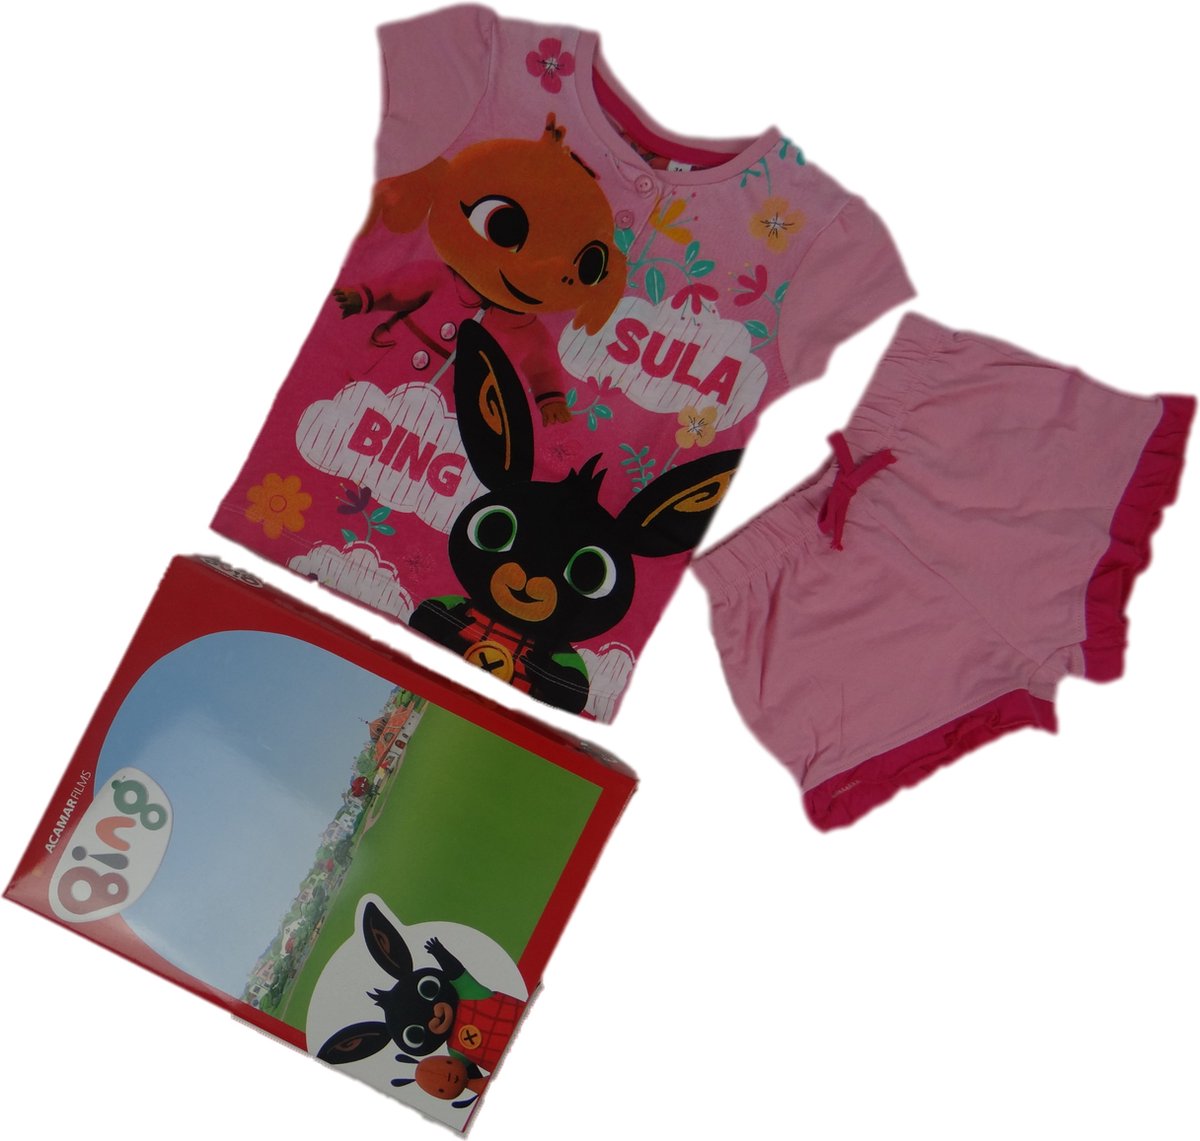 Bing shortama roze - Kinderpyjama - Pyjama van Bing - Slapen - Kinderen - Pyjama voor jongens - Pyjama voor meisjes - Pyjama voor kinderen - Bing pyjama